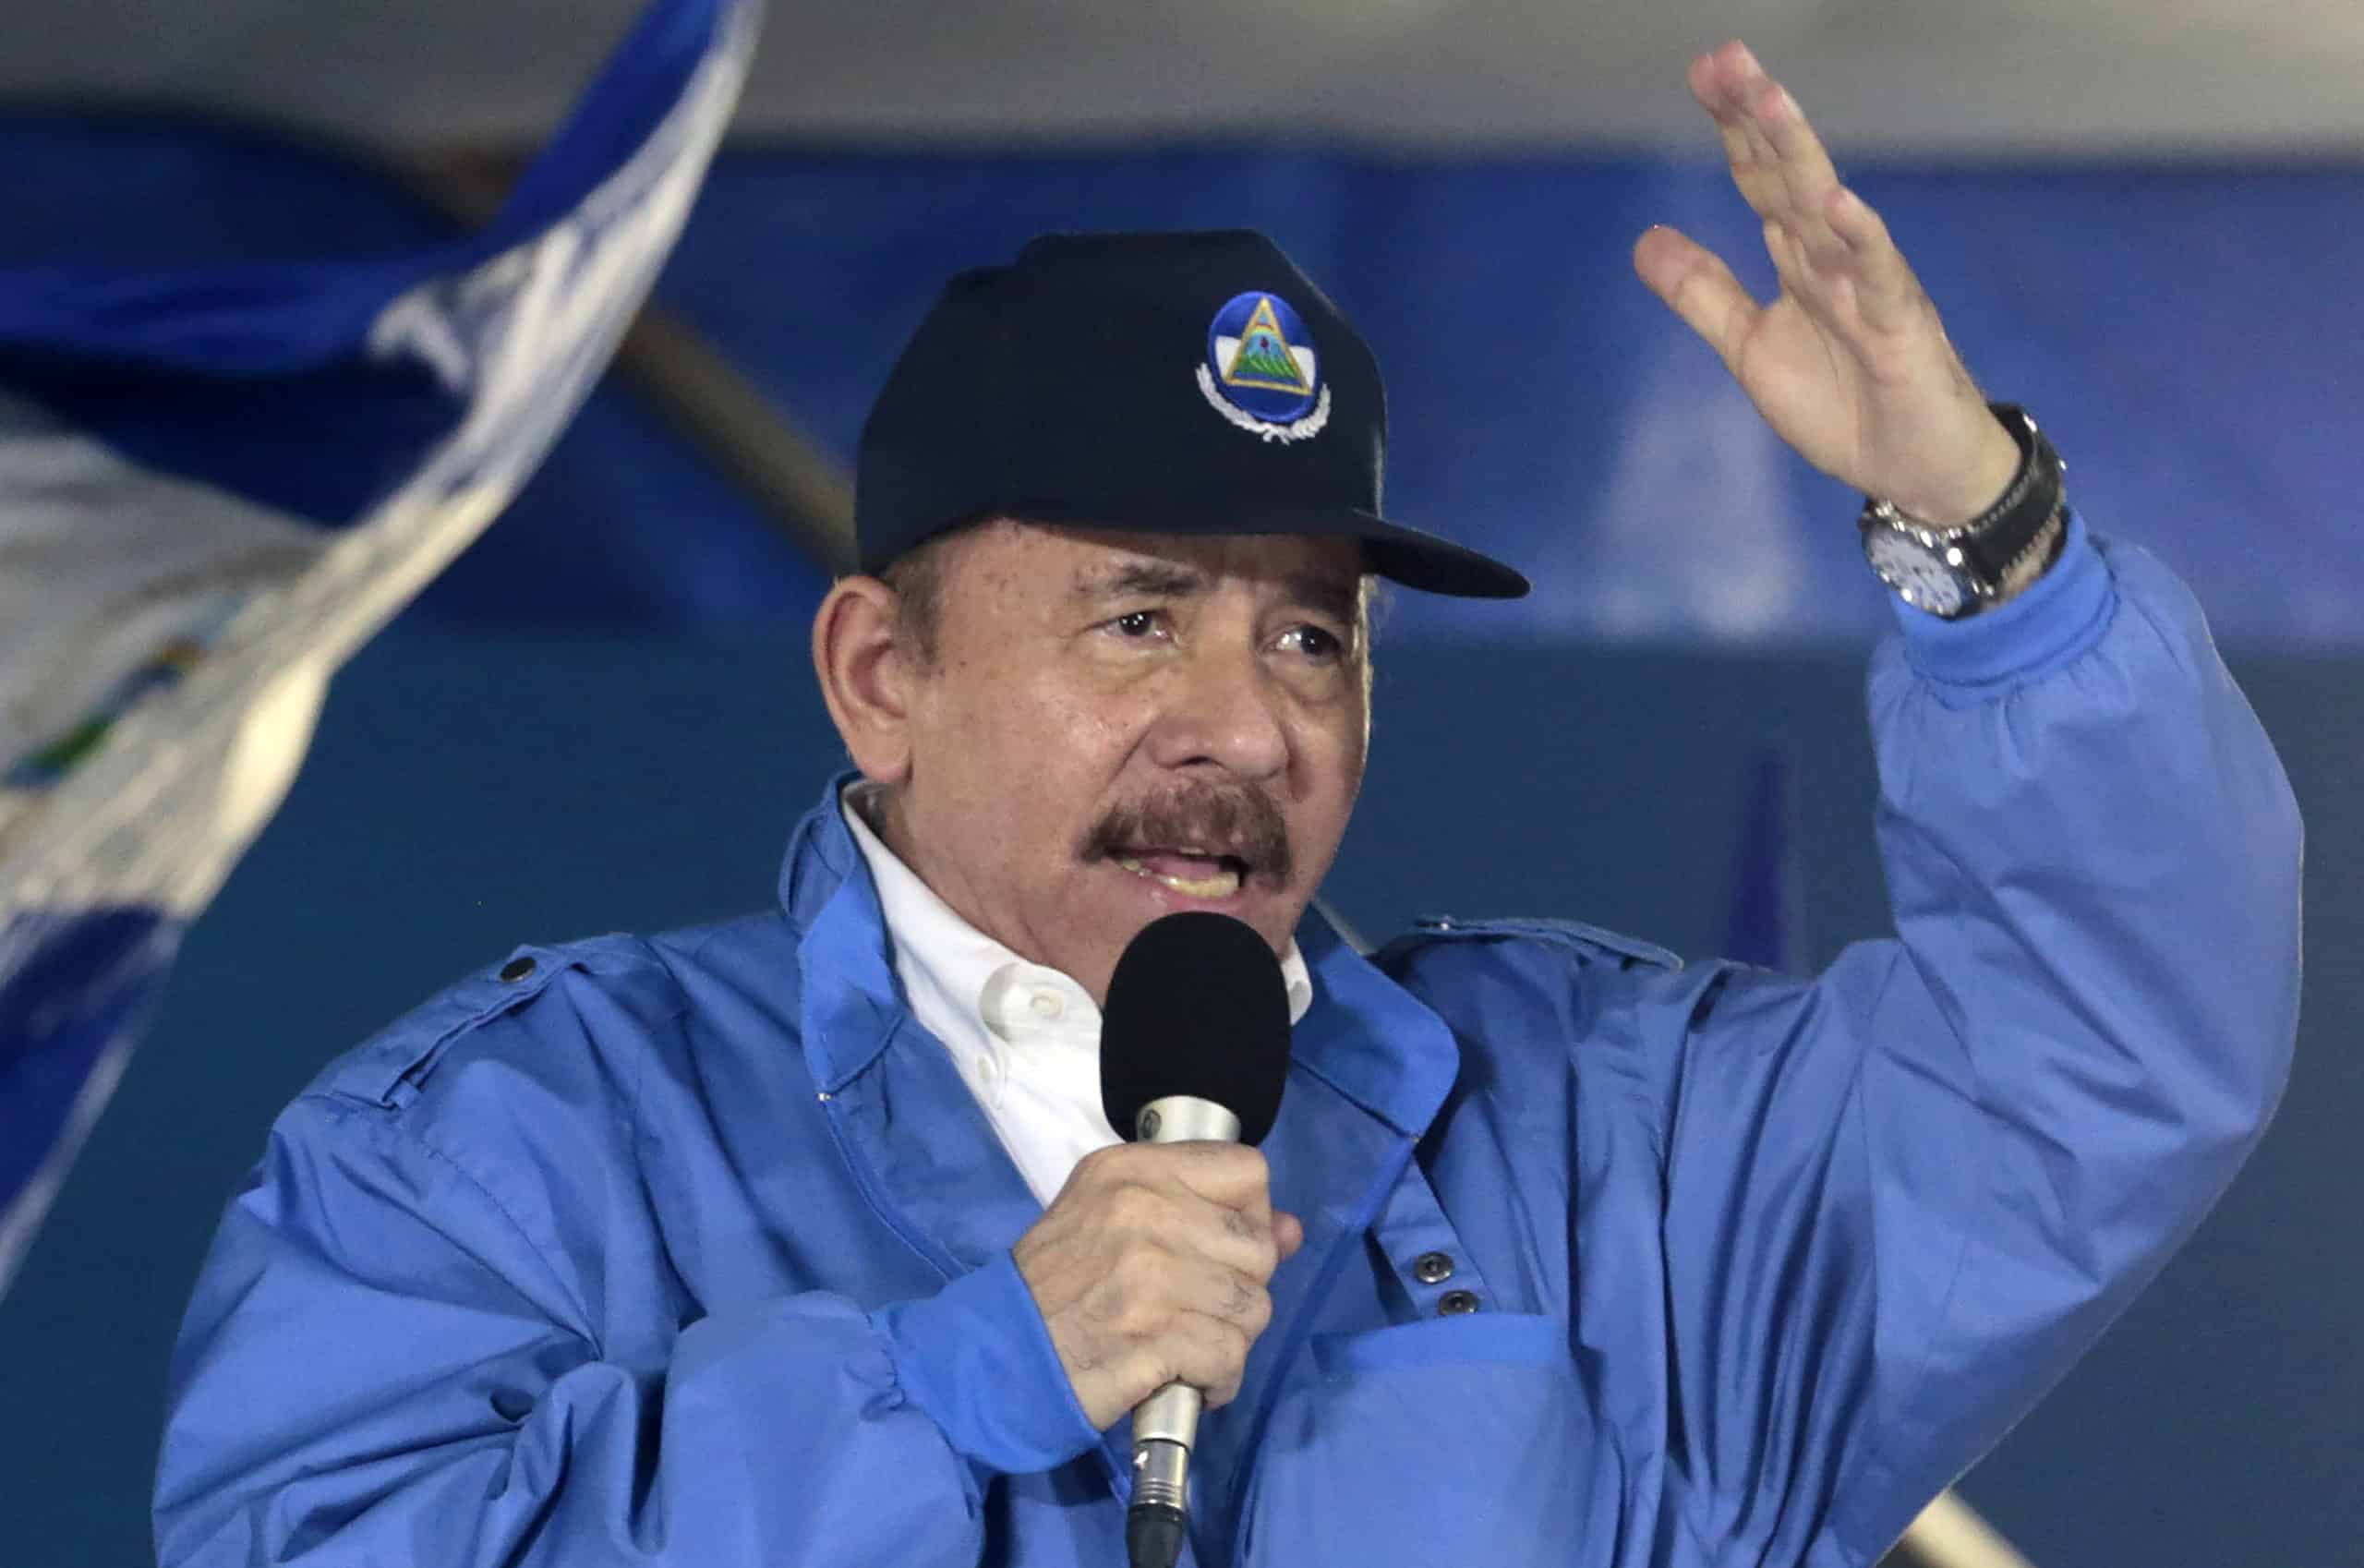 “¿Quién elige al Papa?” Daniel Ortega arremete contra el Vaticano y los llama “mafia”